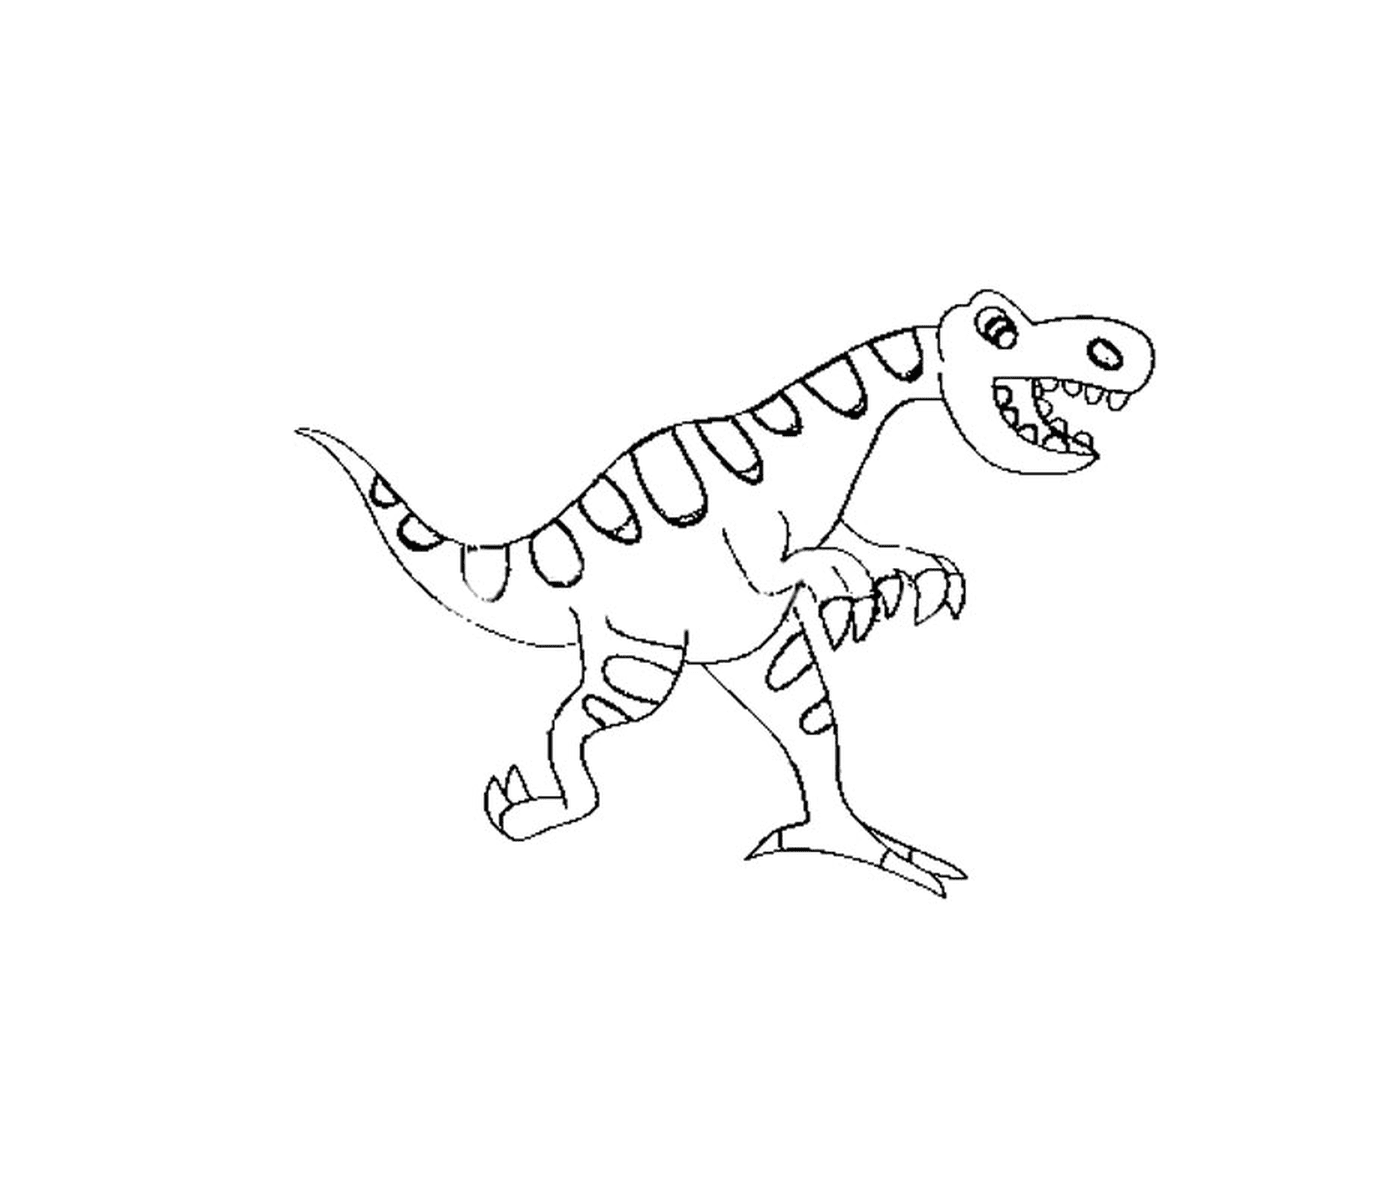  侏罗纪公园的小恐龙 可爱的笑容 